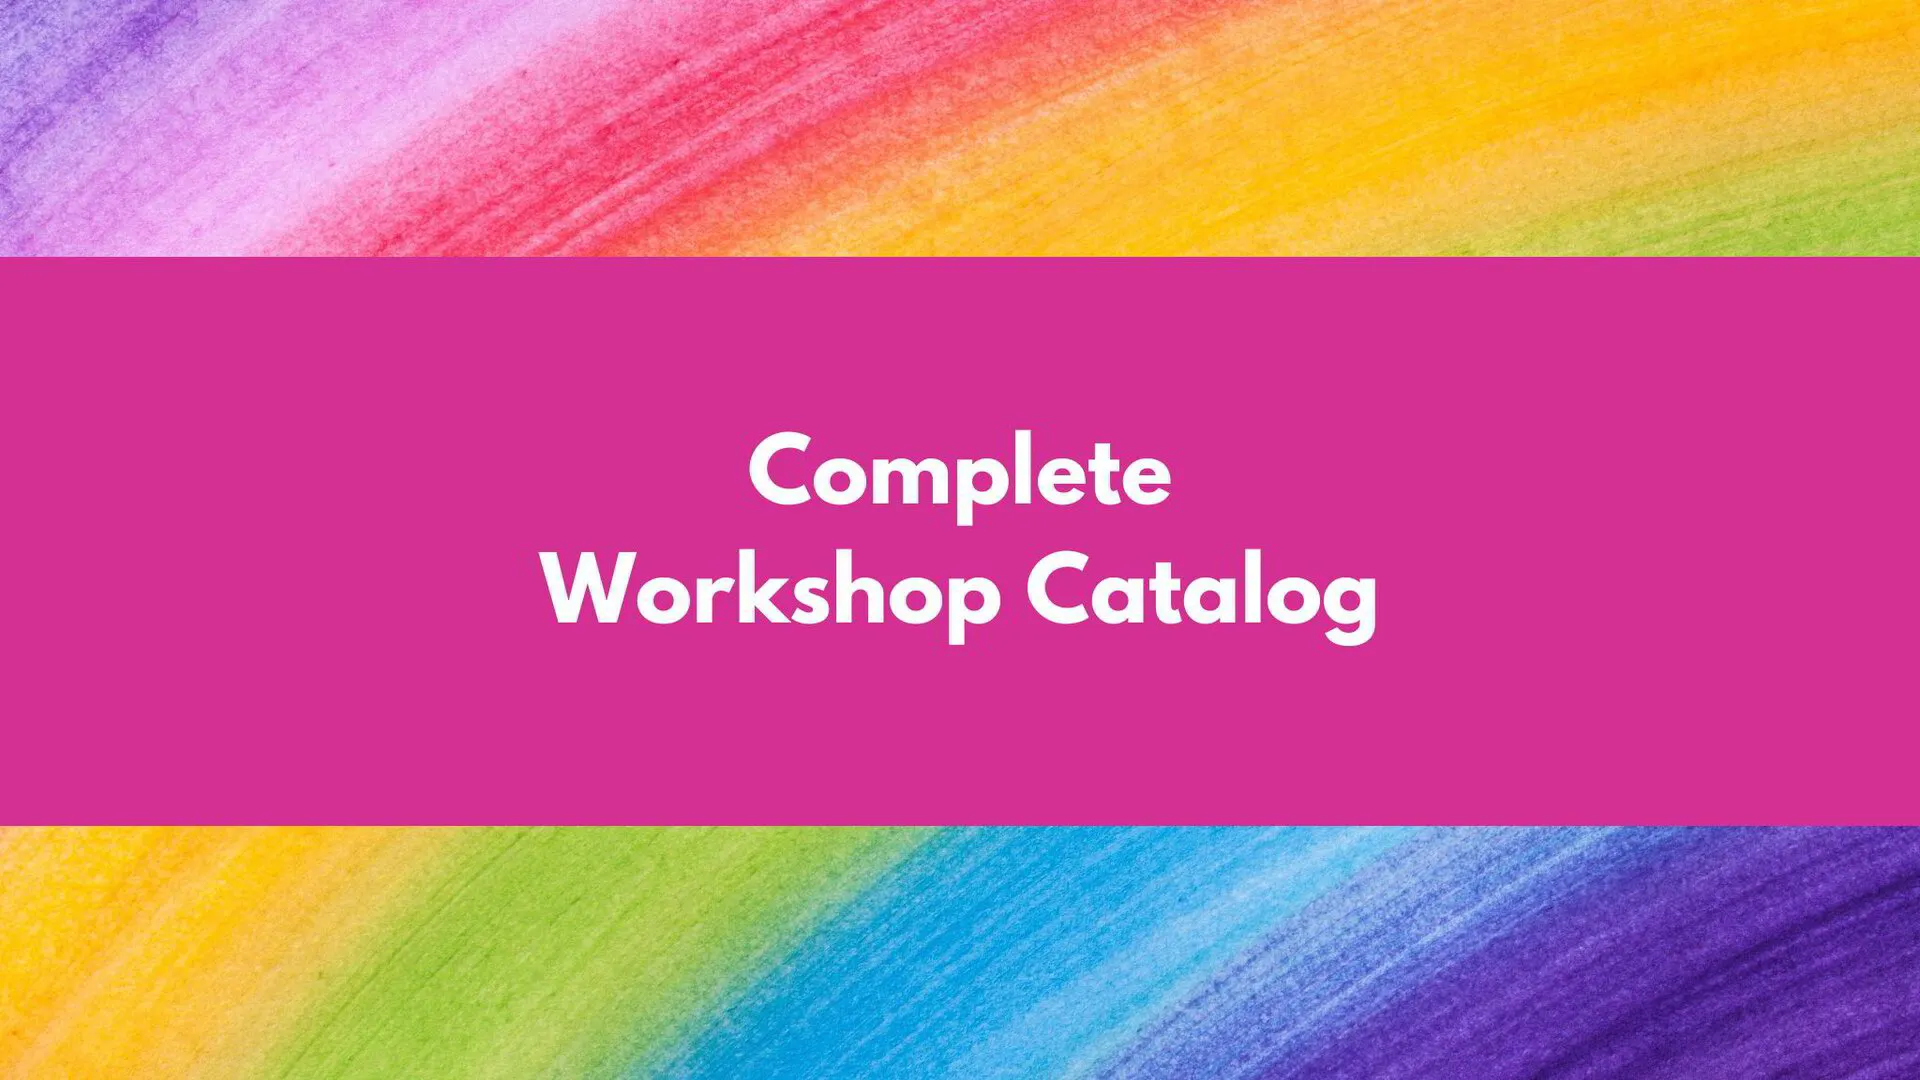 Complete Workshop Catalog